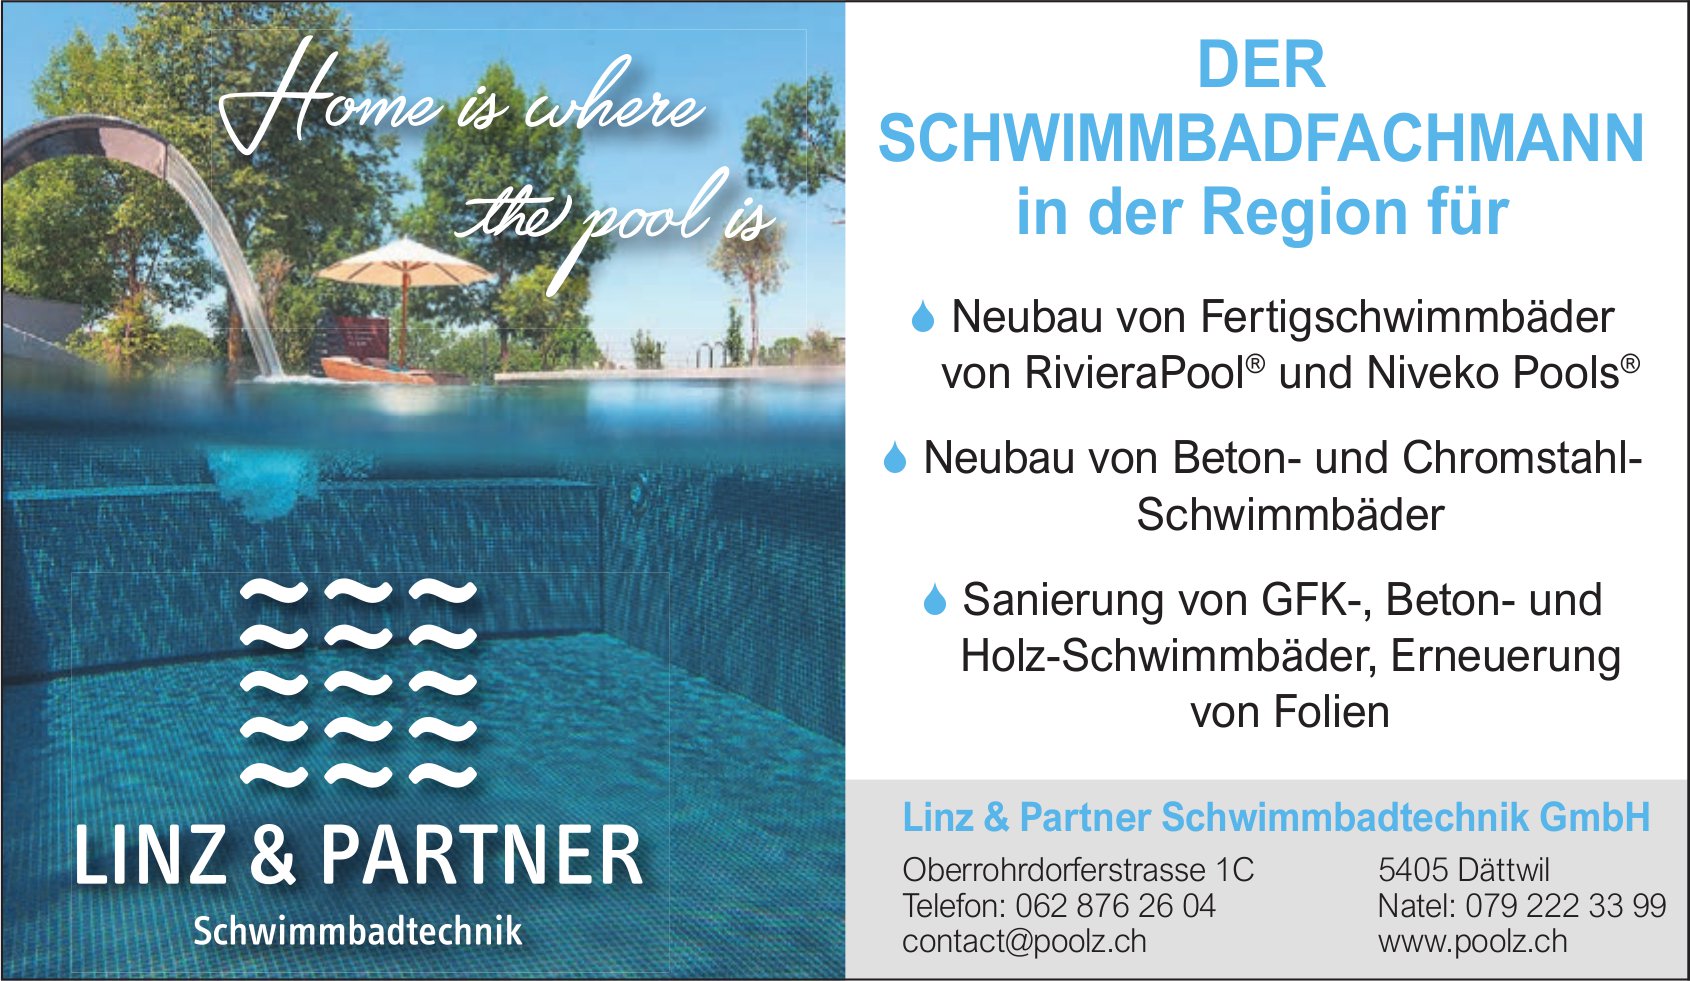 Linz & Partner Schwimmbadtechnik GmbH, Dättwil - Schwimmbadfachmann der Region